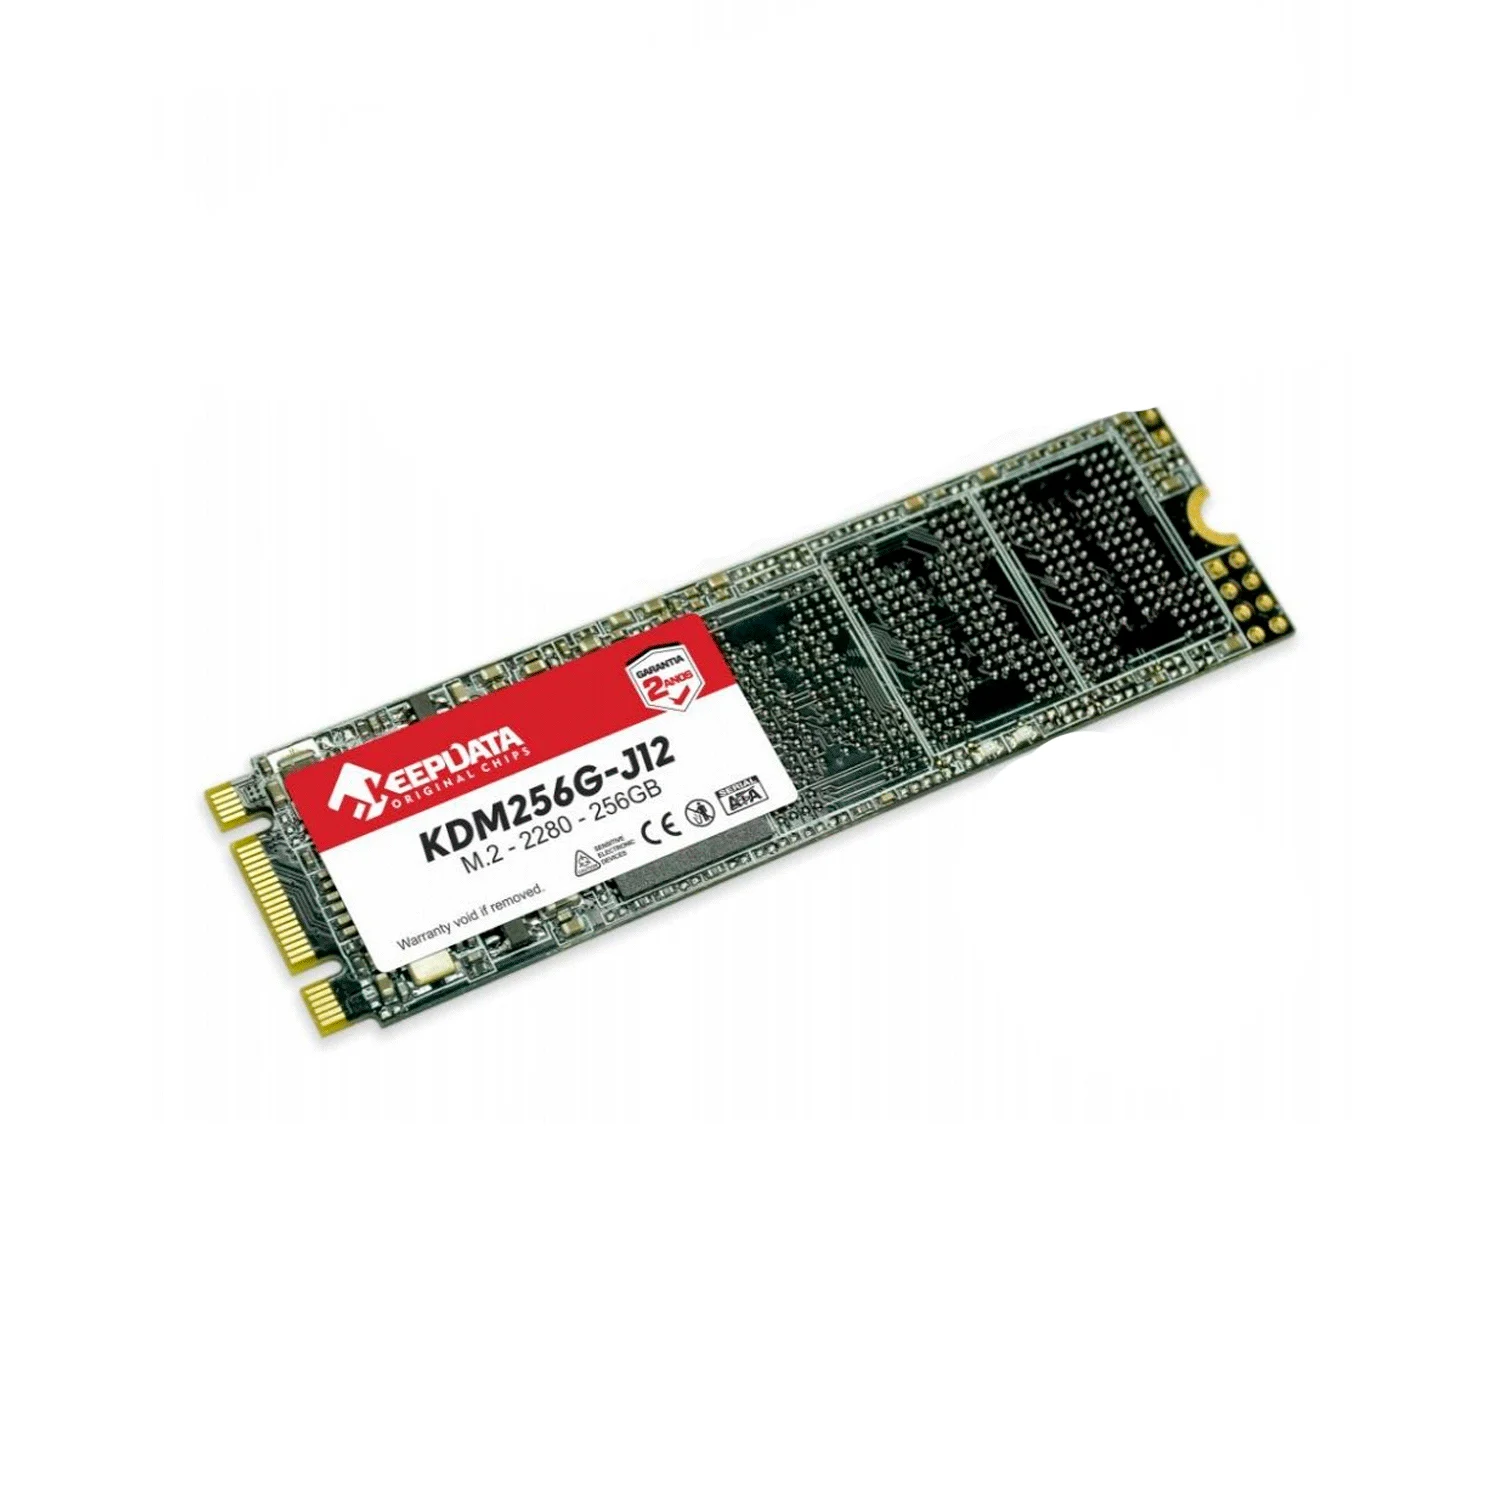 SSD M.2 Keepdata 256GB / 2280 / SATA 3 - (KDM256G-J12)